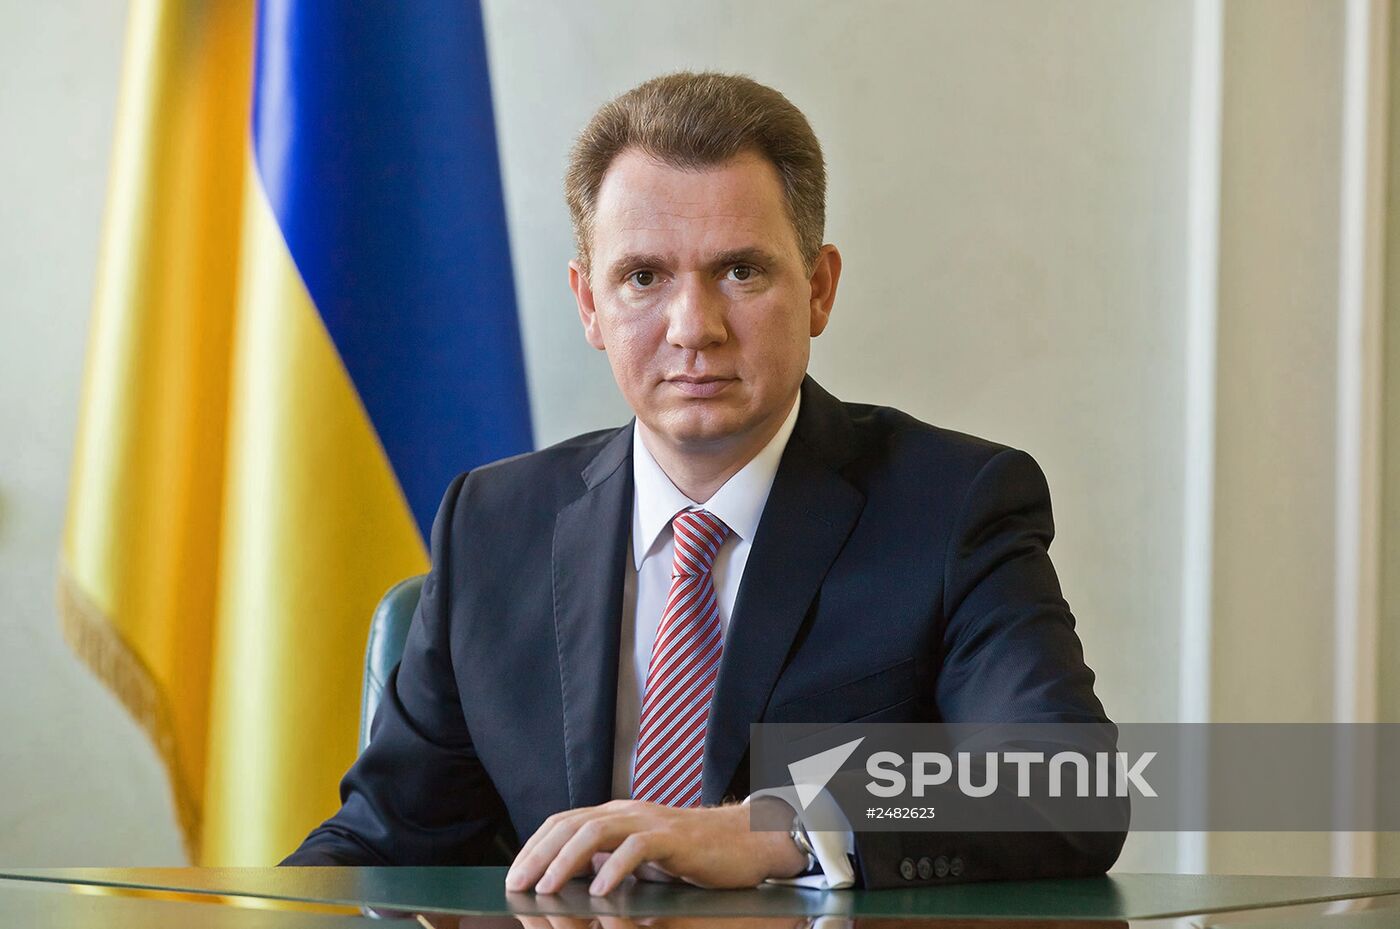 Mykhaylo Okhendovsky, Chairman of the Ukrainian Central Election Commission